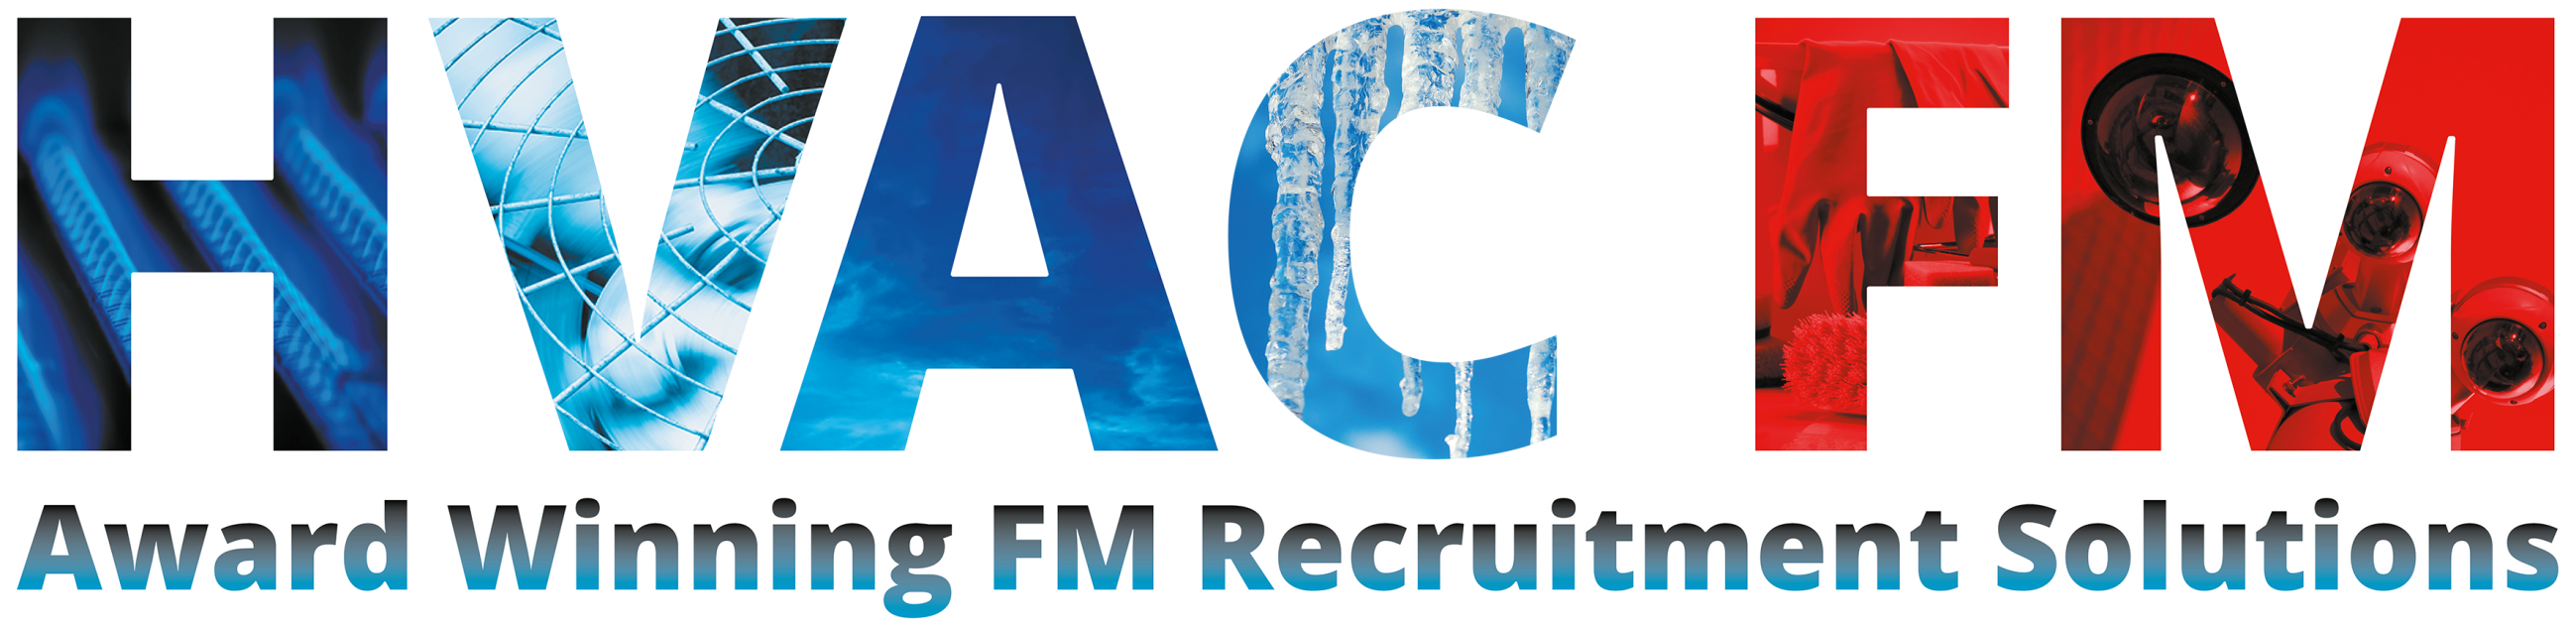 HVAC FM Recruitment Logo